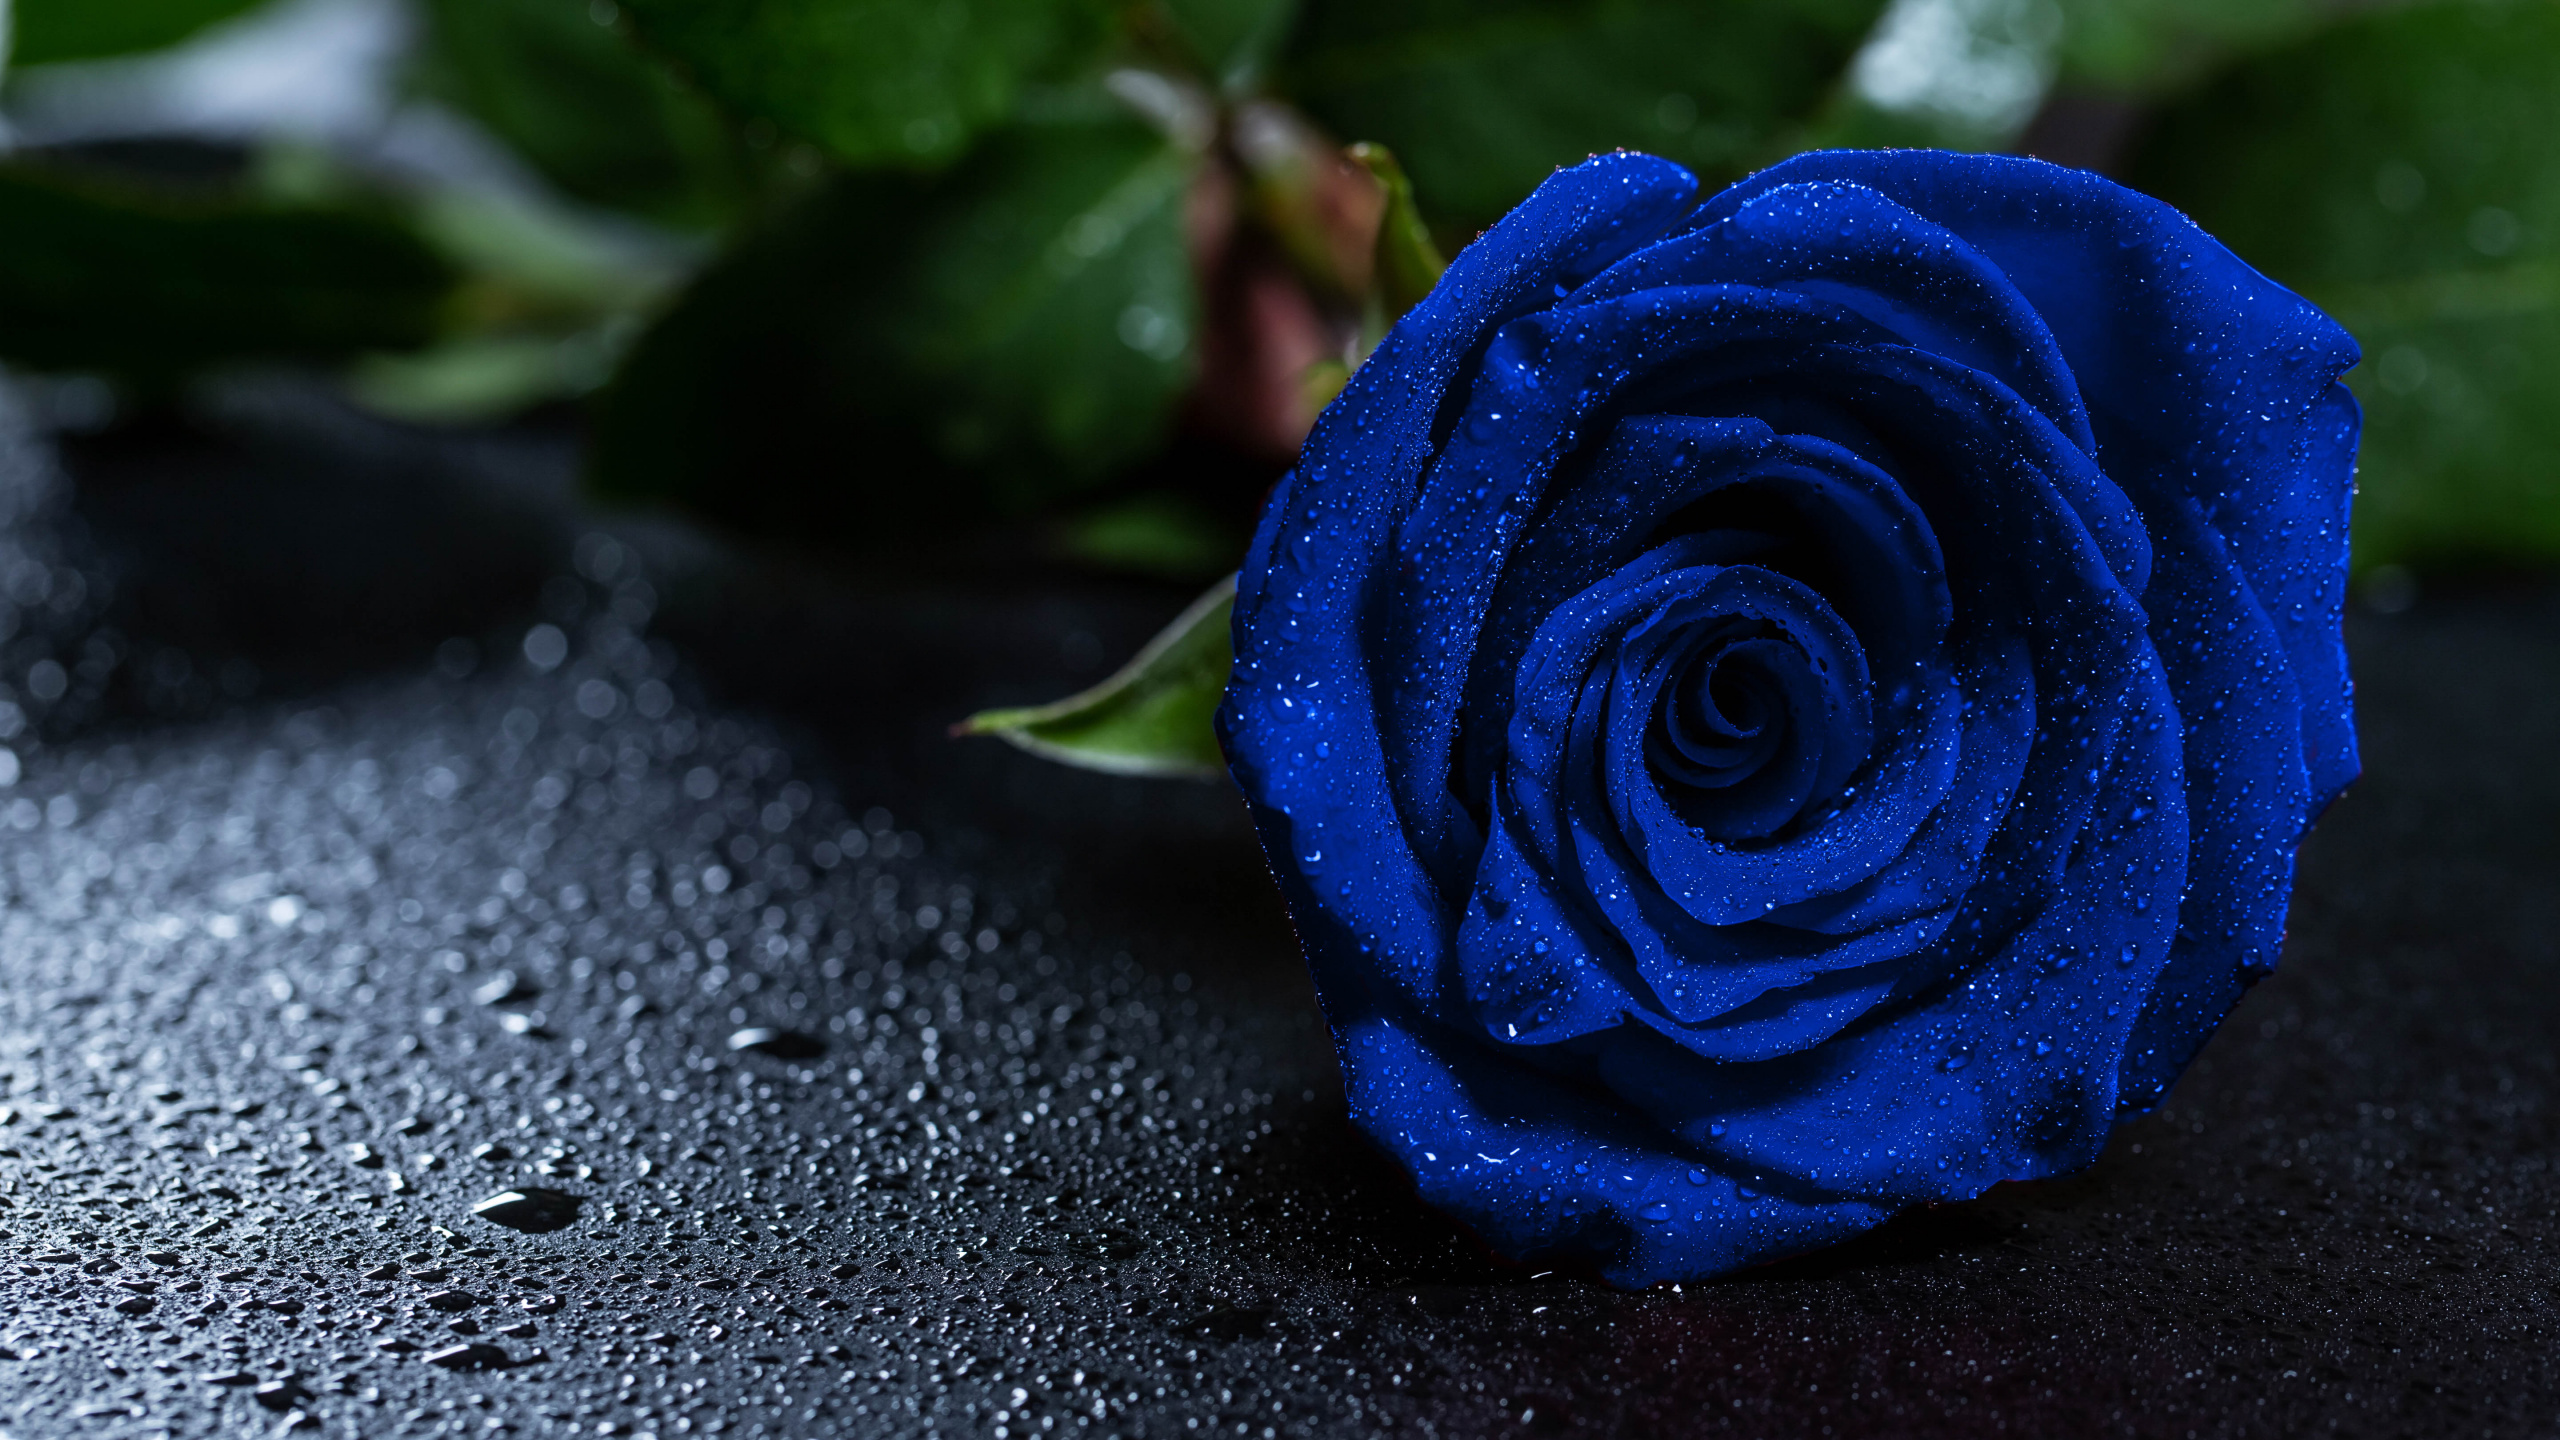 蓝玫瑰, 显花植物, 玫瑰花园, 钴蓝色的, 玫瑰家庭 壁纸 2560x1440 允许